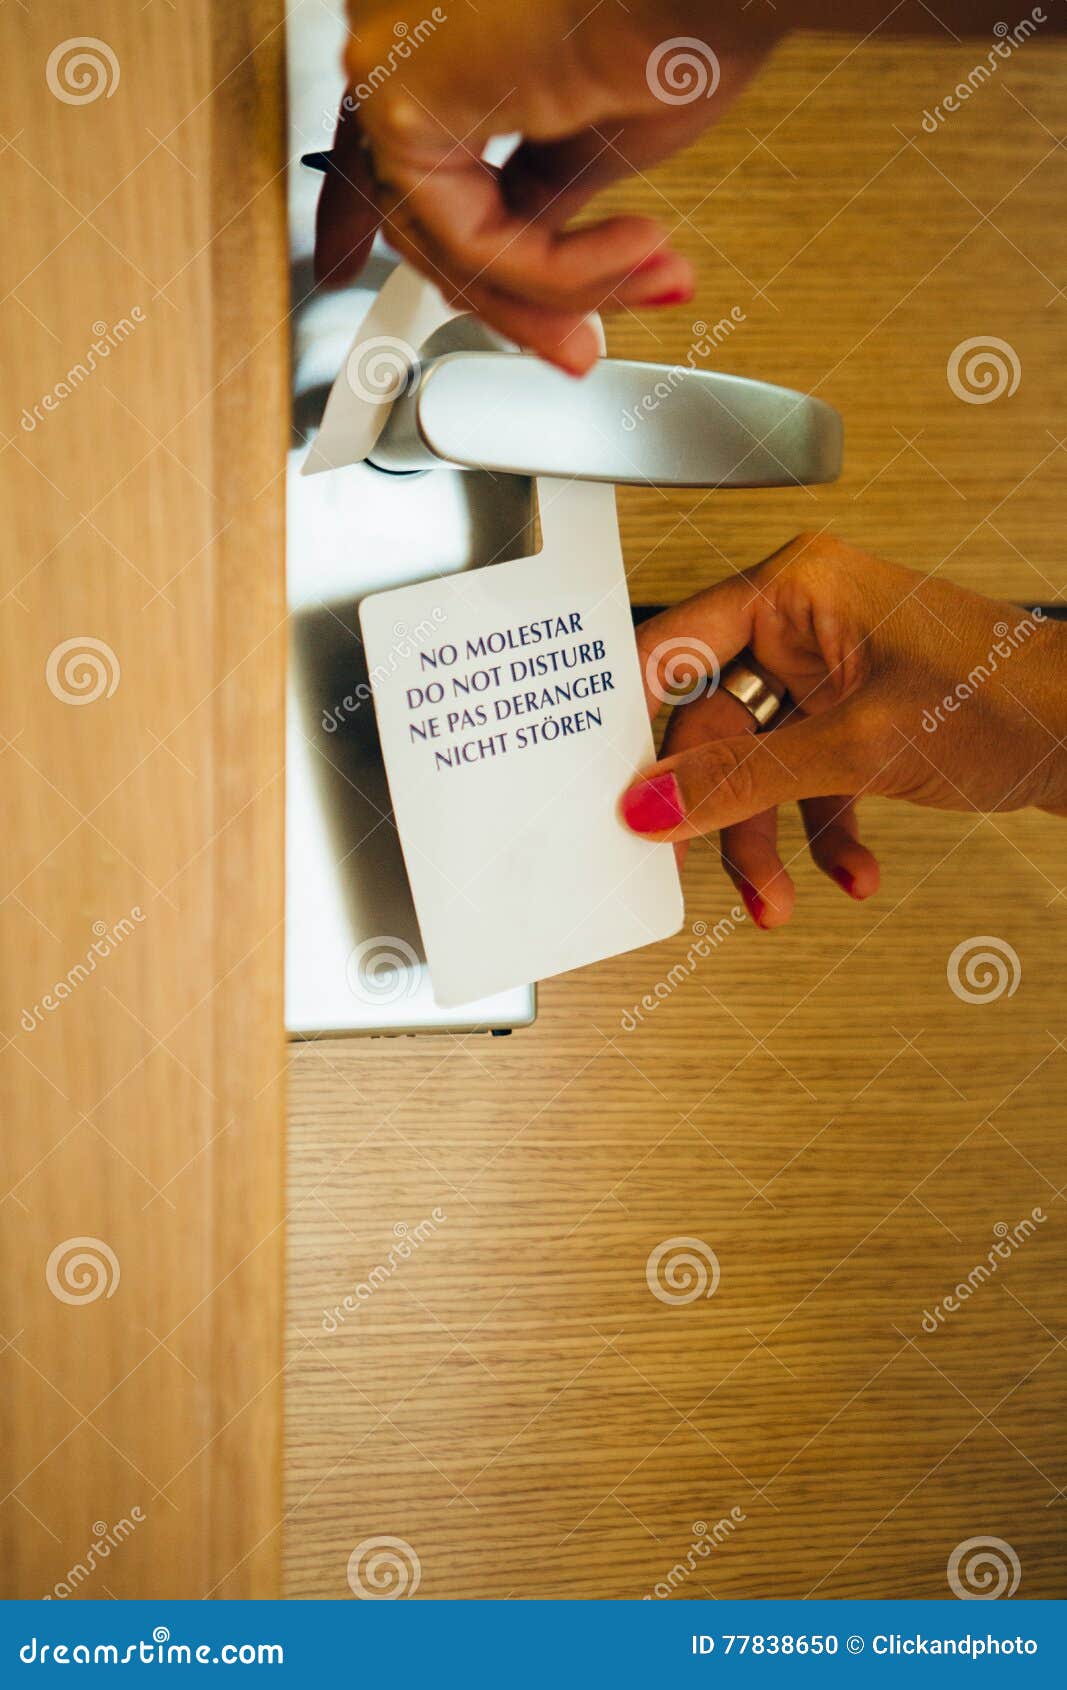 Do Not Disturb Sign On Door Handle Stock Photo Image Of Wood